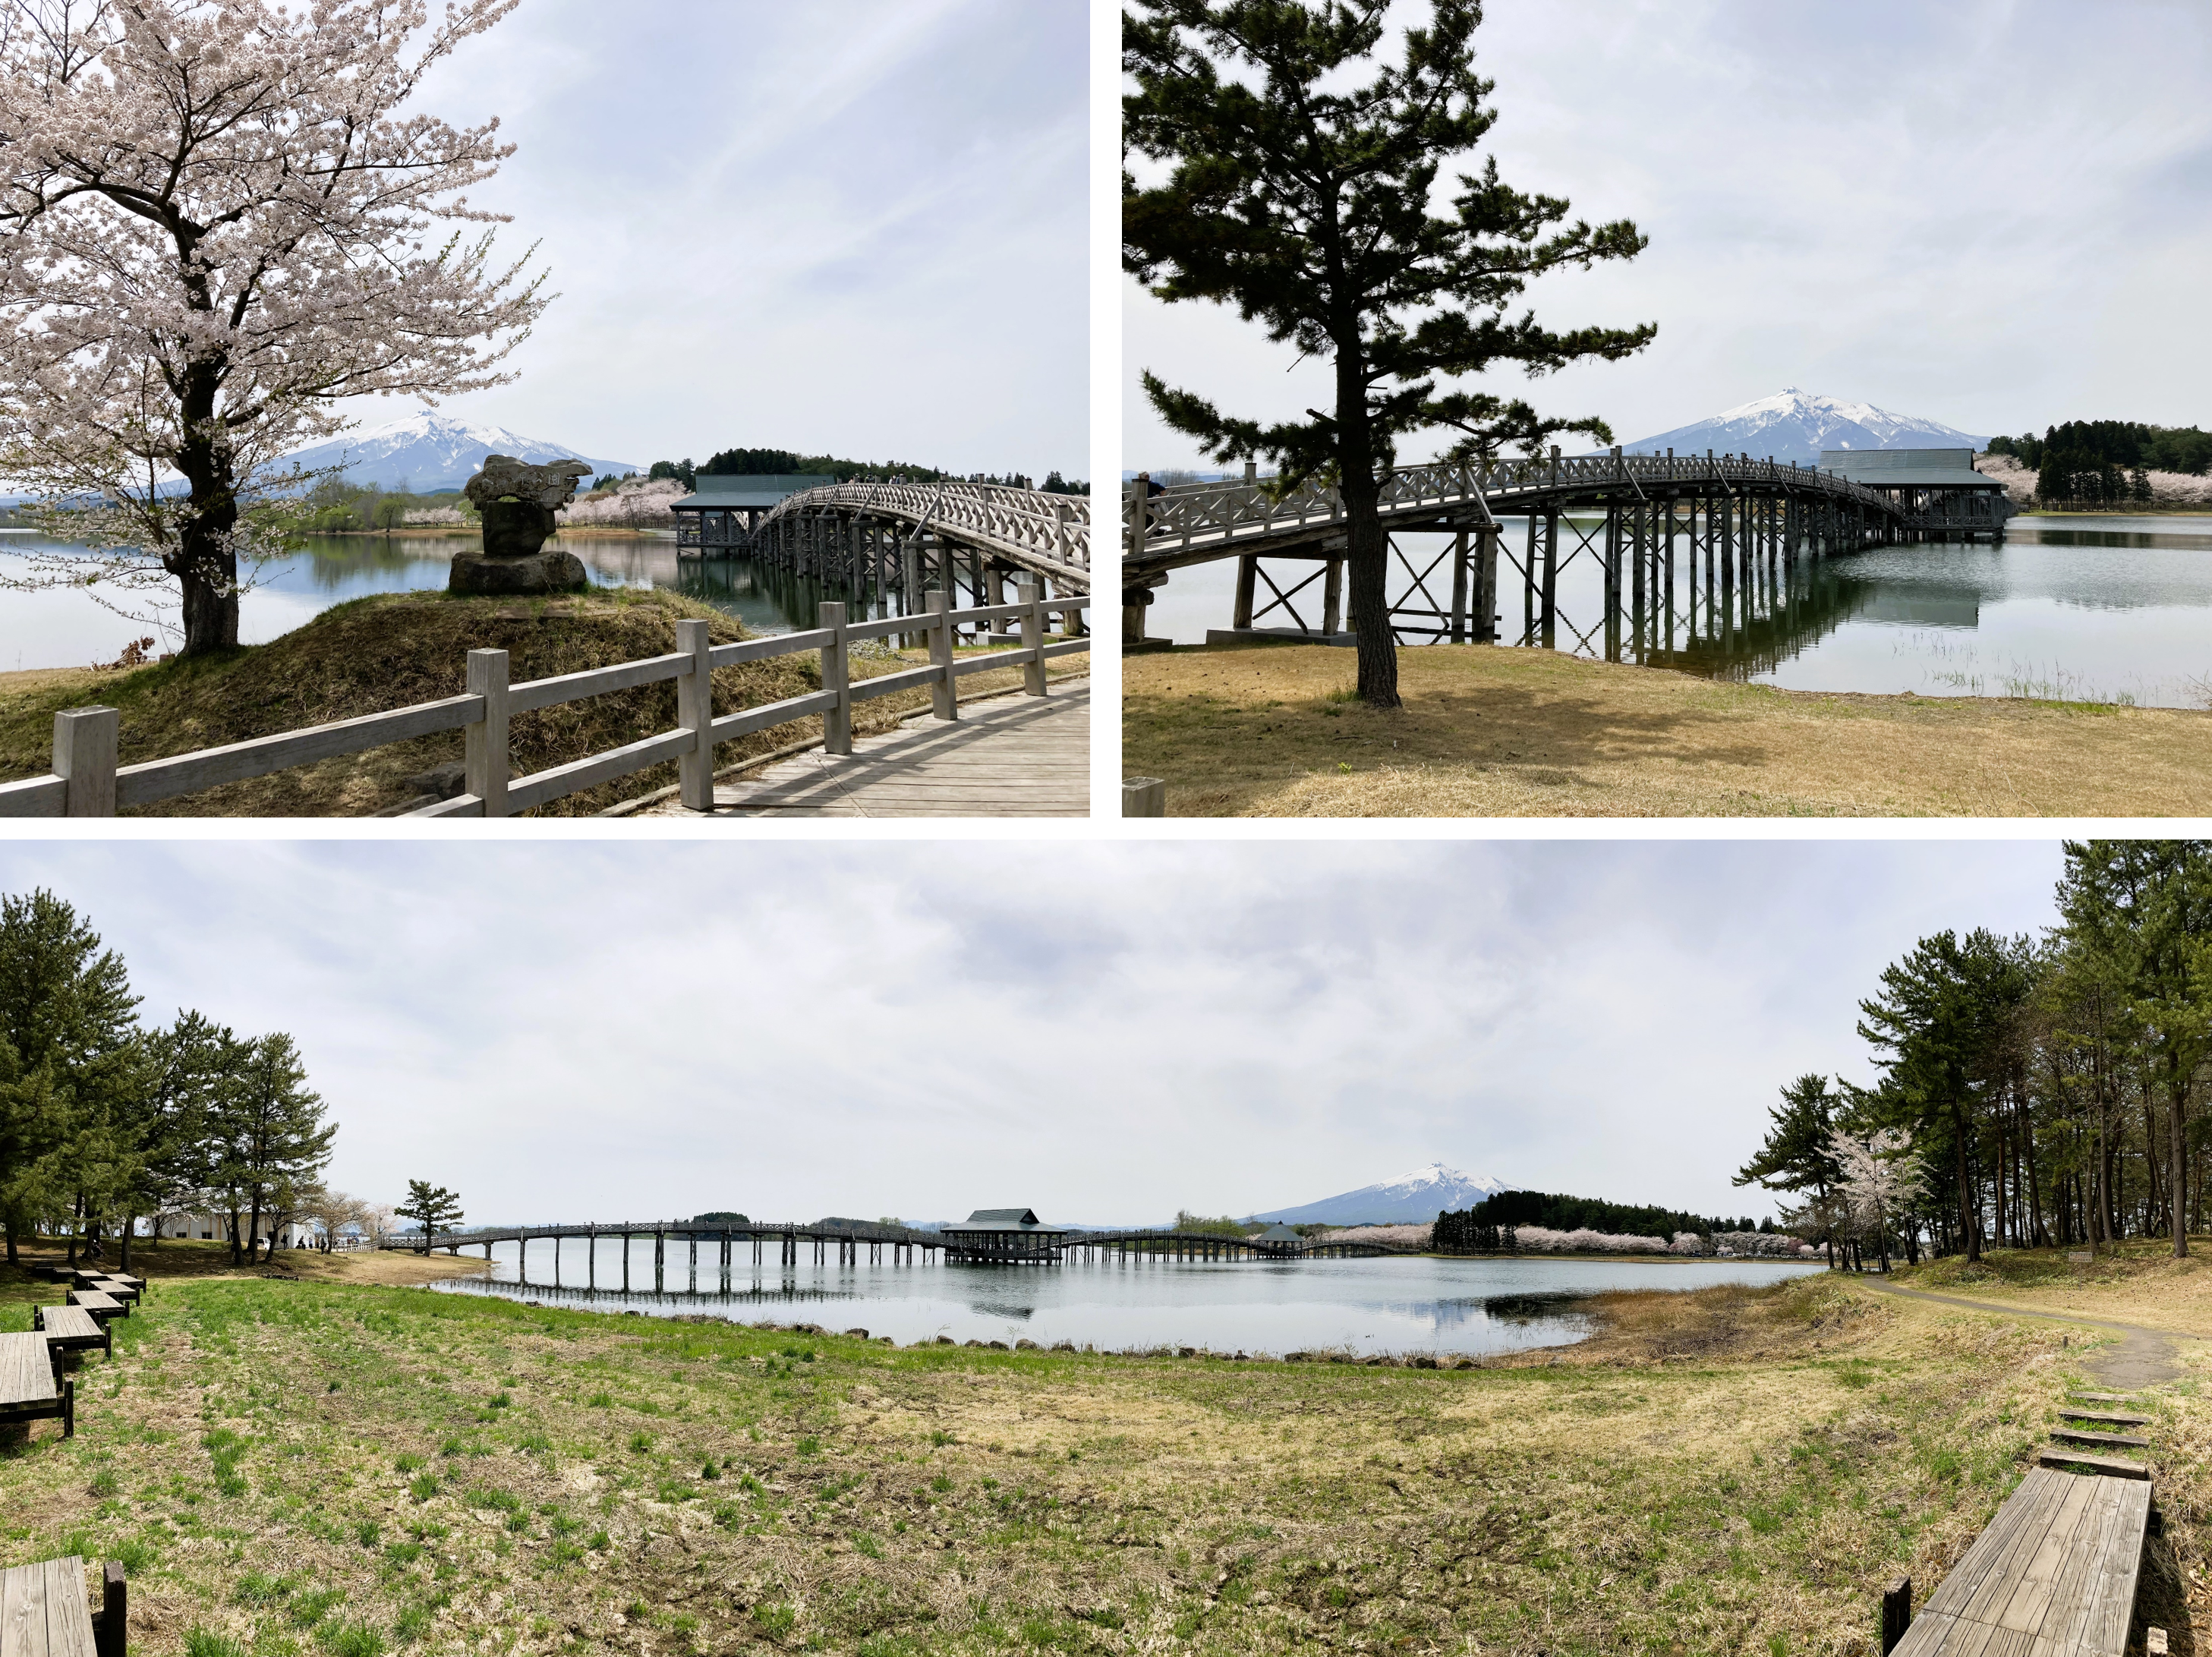 鶴の舞橋は津軽富士見湖に架けられている！鶴田町の観光名所「鶴の舞橋」は、「富士見湖パーク」に隣接した「津軽富士見湖」に架けられています。鶴田町のシンボルとして多くの人々に愛され、訪れる旅行客に人気の観光地です。こちらのページでは、「鶴の舞橋」や「津軽富士見湖」「富士見湖パーク」への行き方（アクセス方法）についてご案内しています。車が無い方でも安心！鶴田町の観光はタクシーで自由自在！電車の到着時刻にあわせてJR陸奥鶴田駅ではタクシーが待機しております。運転手とおしゃべりして地元（ローカル）の情報をGETできるのもタクシーの魅力。富士見湖パークのあとは美味しいお料理のお店へ行ってみましょう。